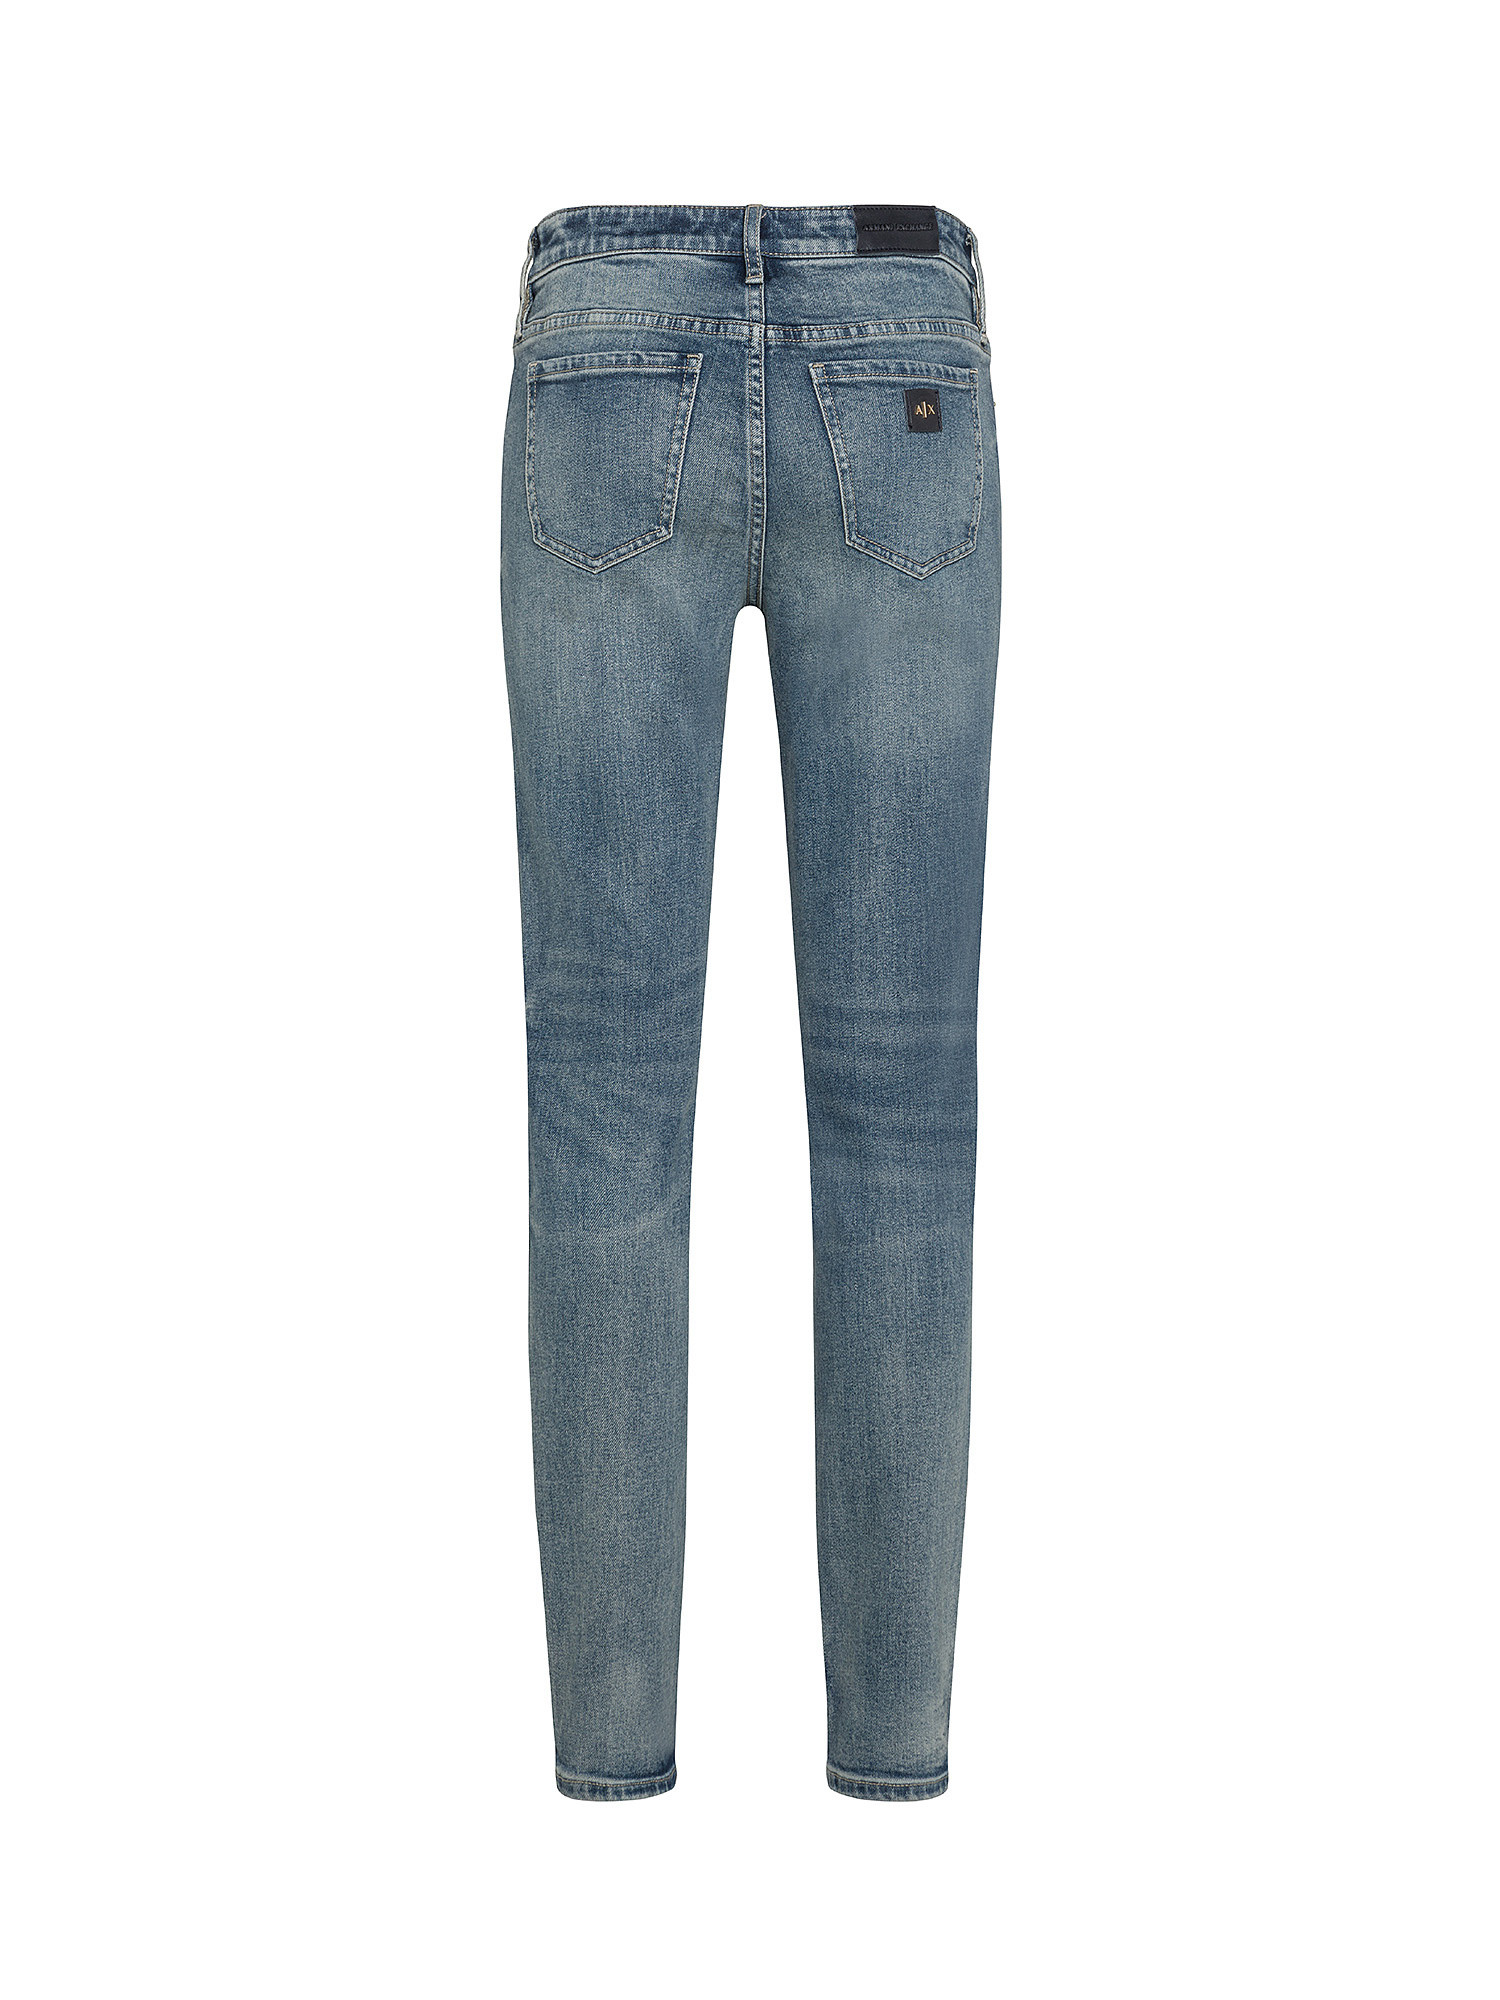 Armani Exchange - Five pocket super skinny jeans, Denim, large image number 1